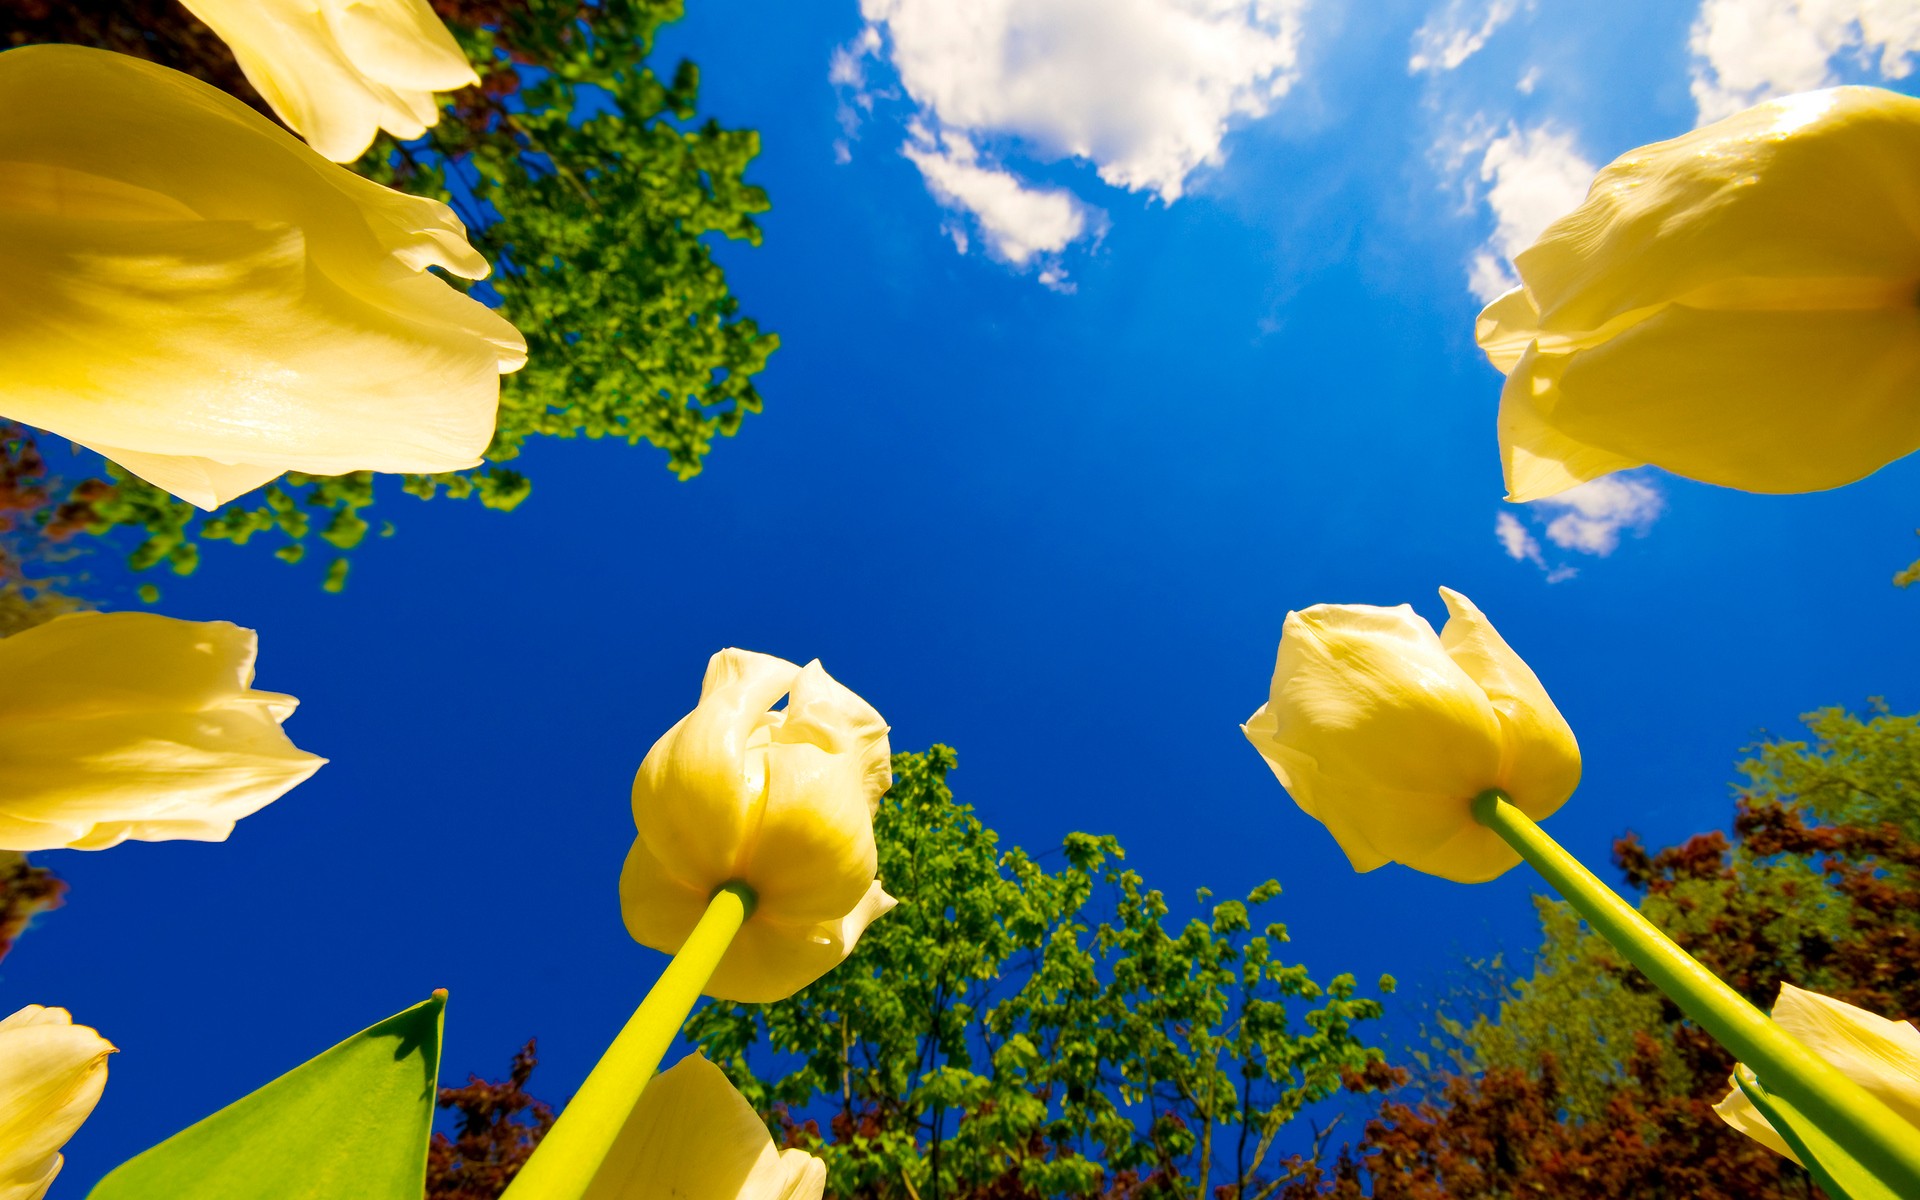 Скачать картинку Цветок, Тюльпан, Желтый Цветок, Земля/природа в телефон бесплатно.